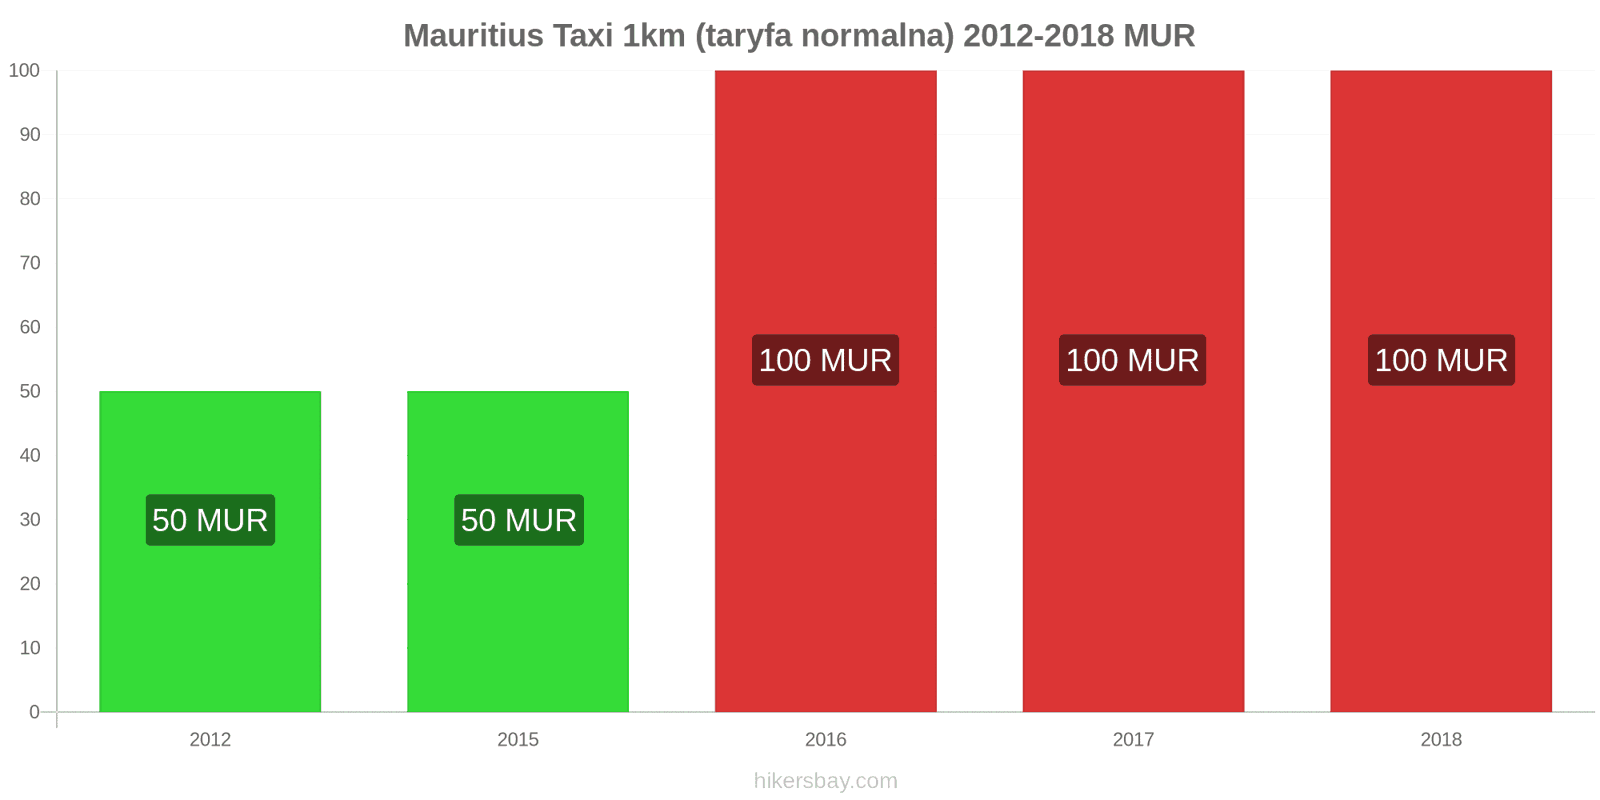 Mauritius zmiany cen Taxi 1km (taryfa normalna) hikersbay.com